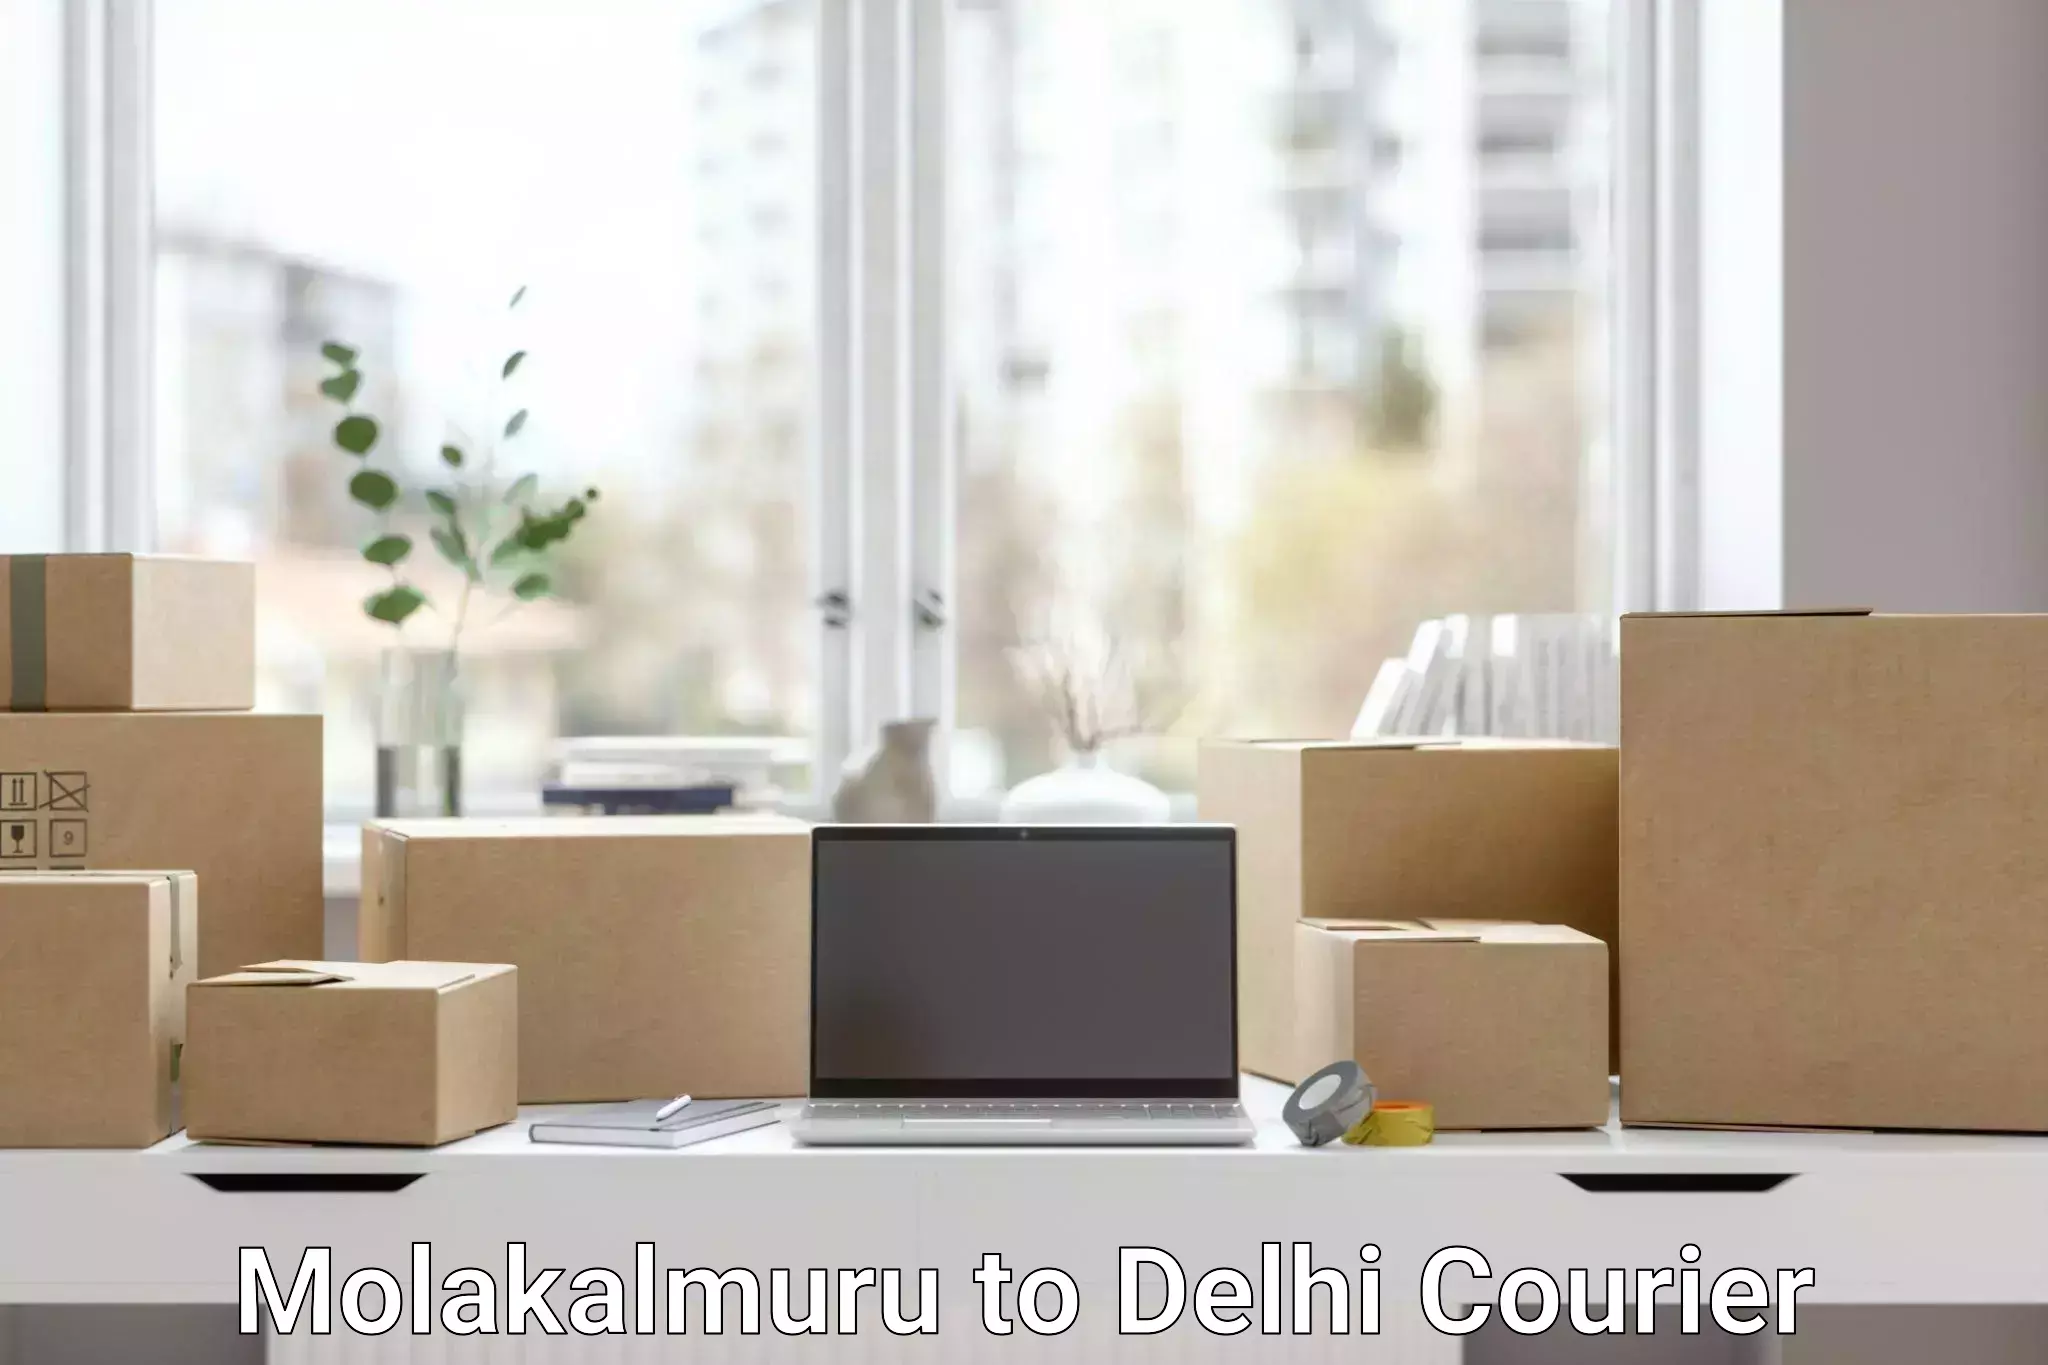 Advanced shipping network Molakalmuru to University of Delhi